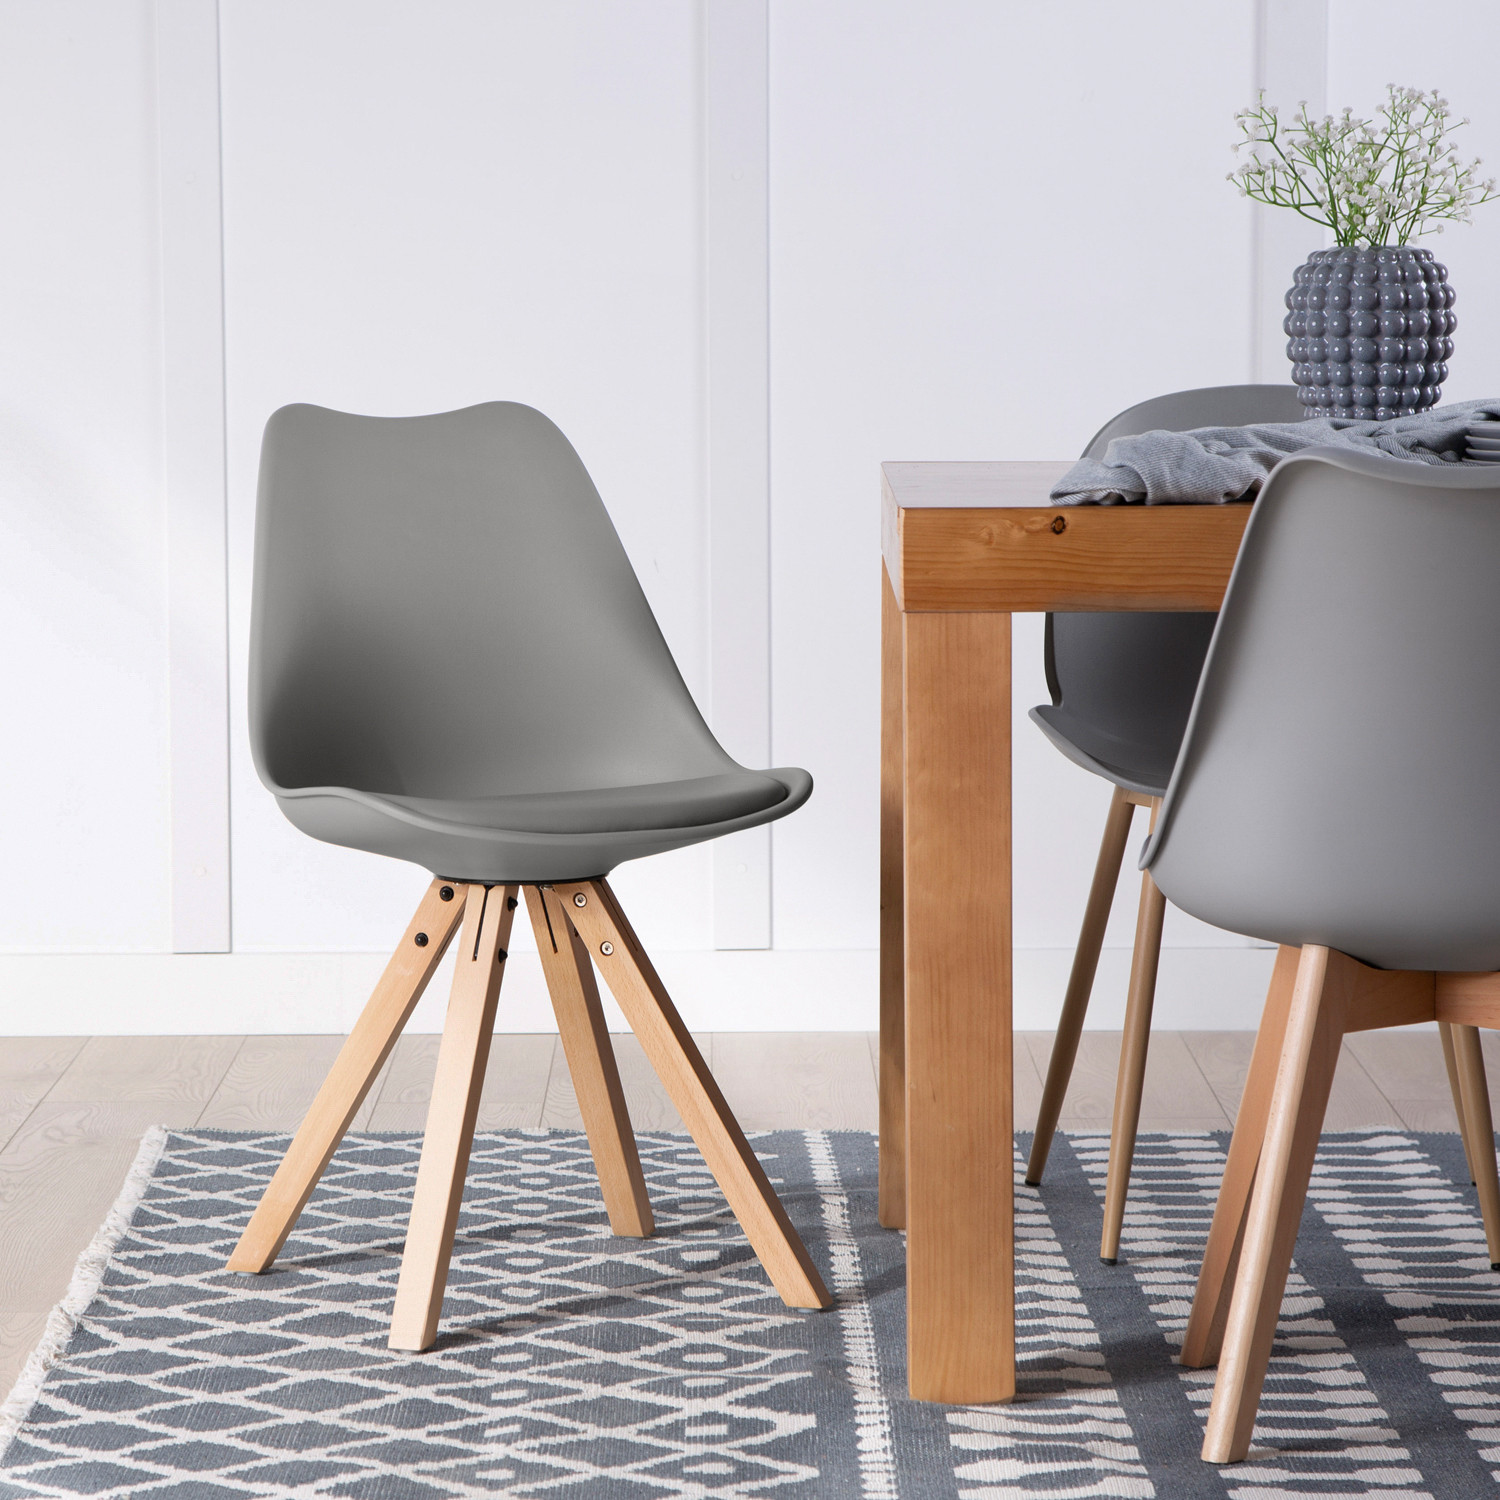 La silla de comedor Nas está fabricada en polipropileno y sus patas son de madera. Su diseño aportará versatilidad a tu hogar